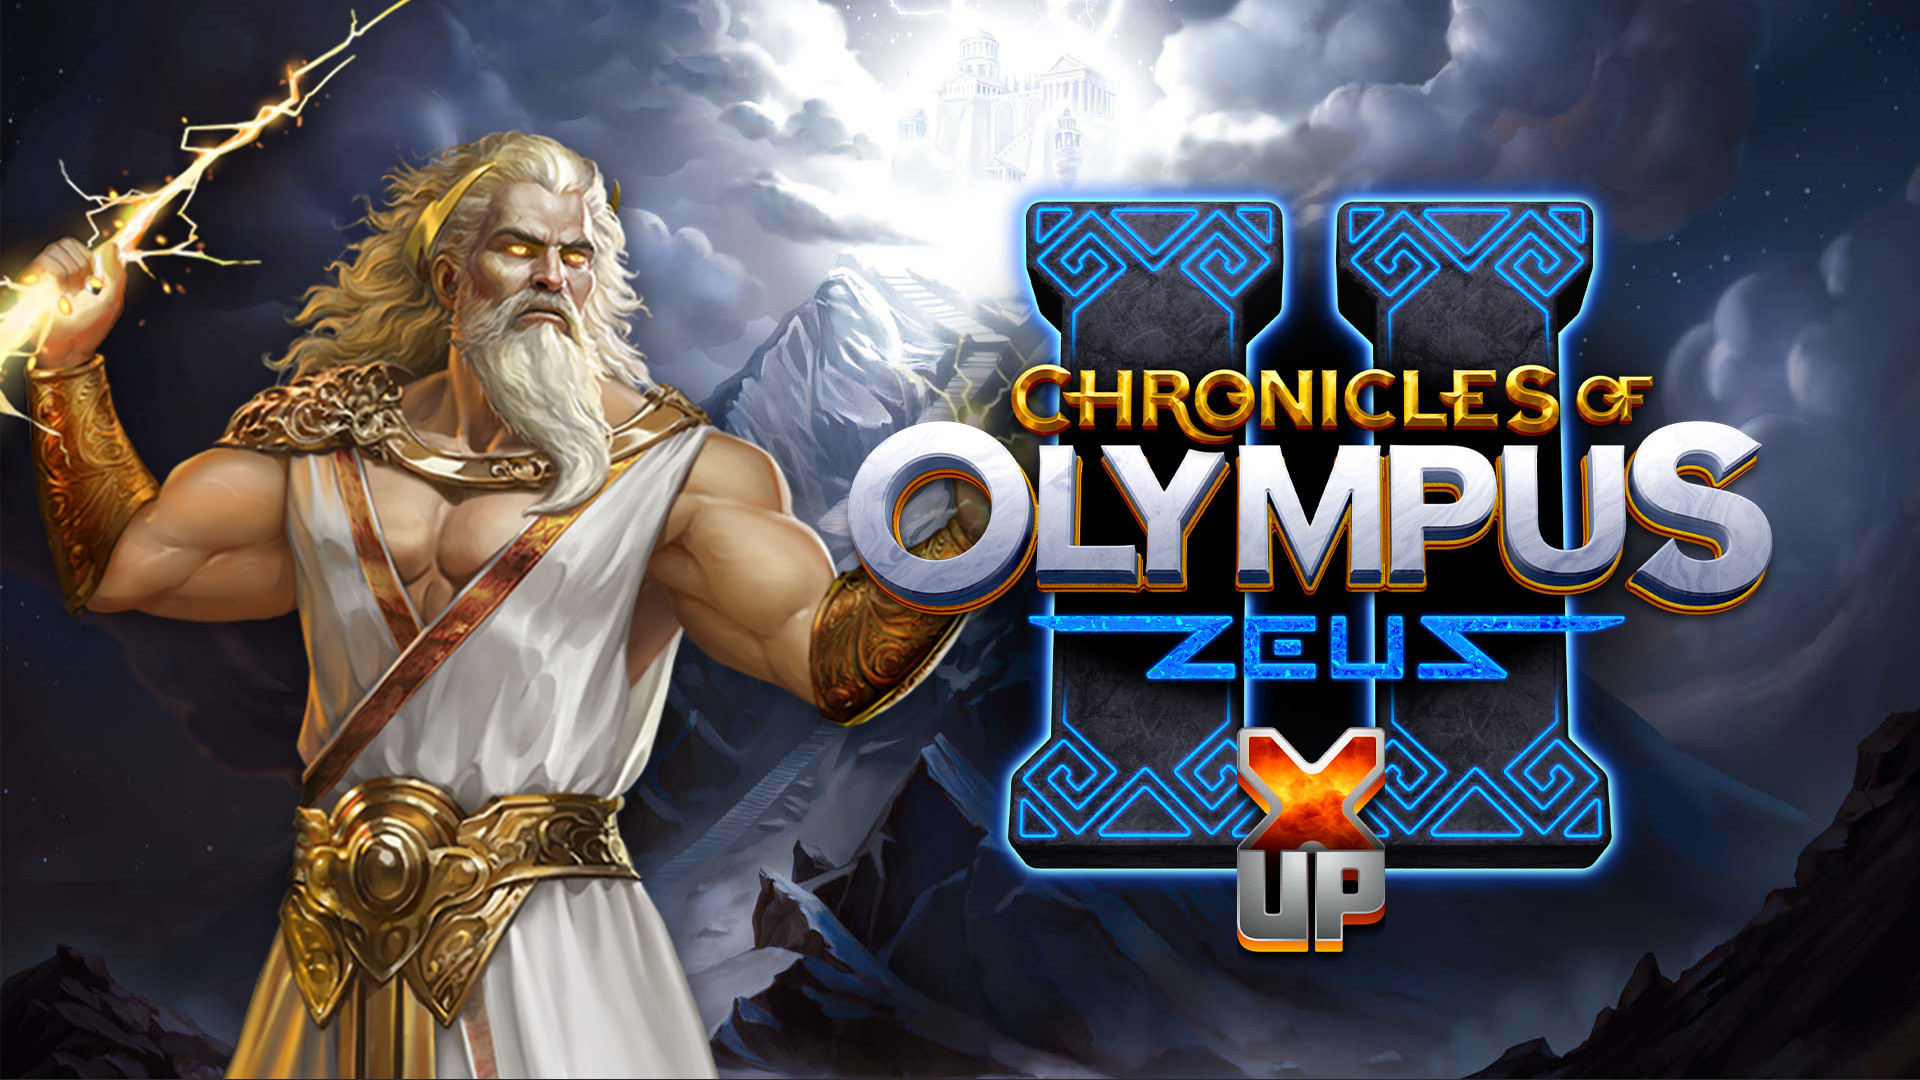 Chronicles of Olympus II X UP - Zeus